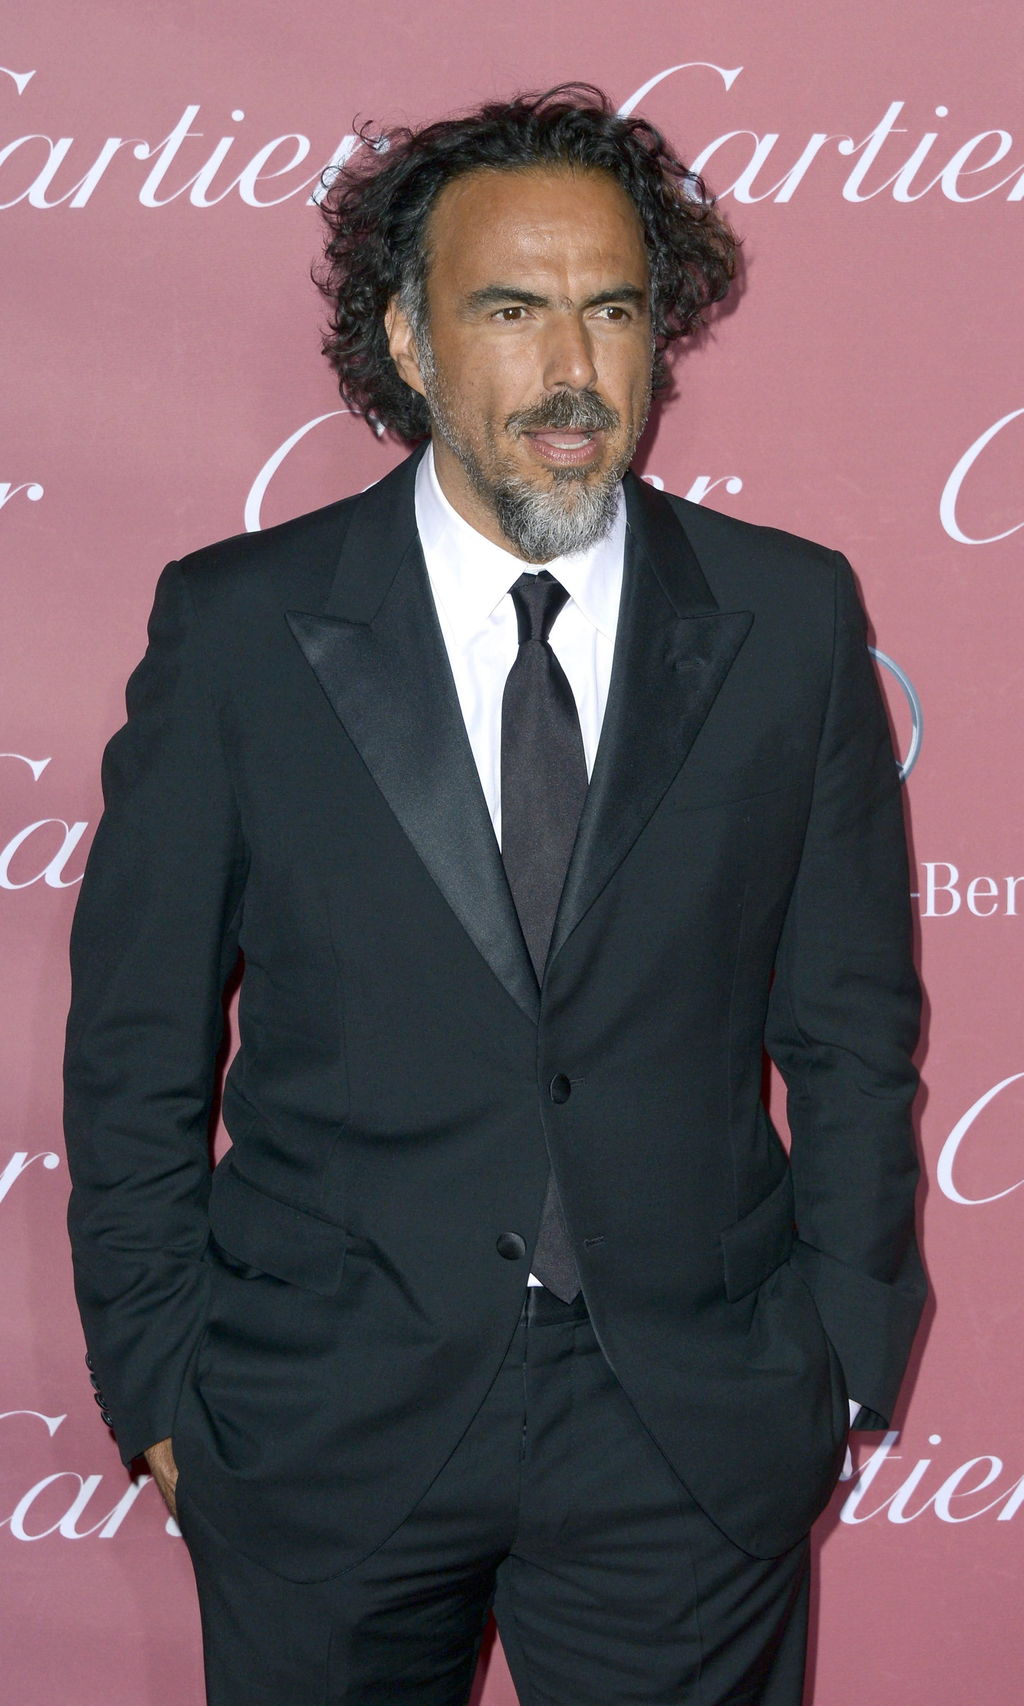 'Downey Jr. halagó a González Iñárritu'